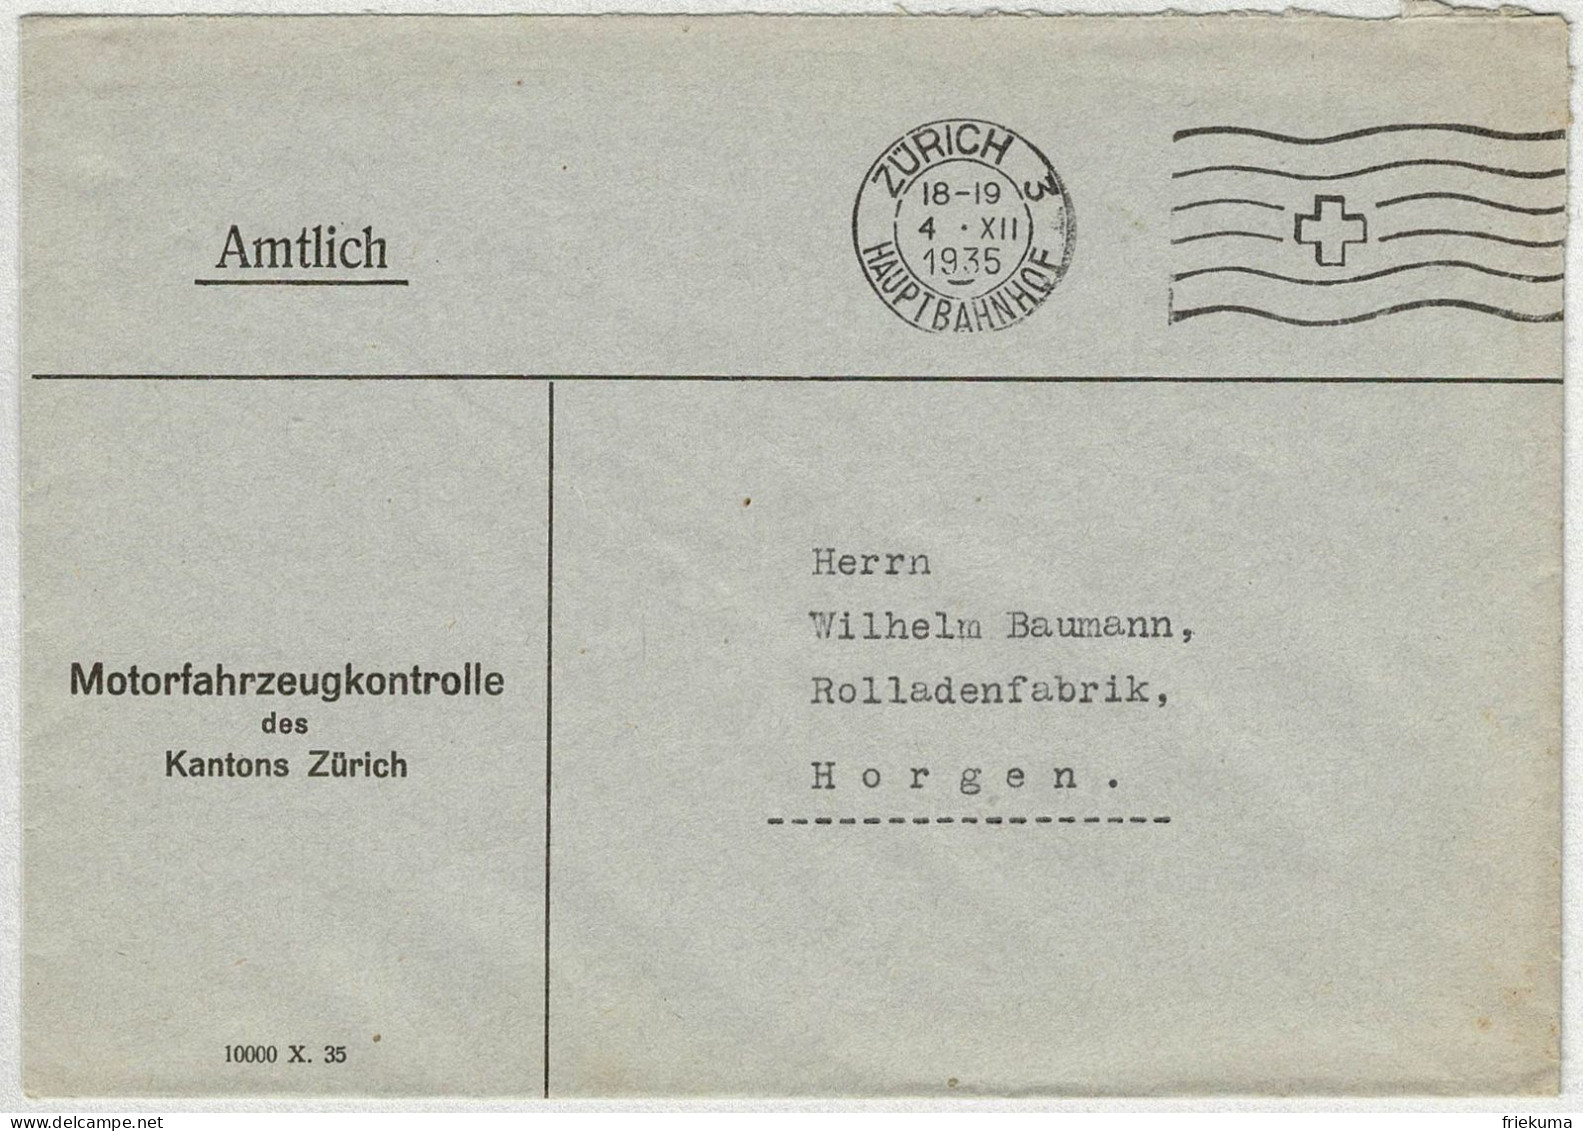 Schweiz 1935, Brief Amtlich Zürich Hauptbahnhof - Horgen - Marcofilie